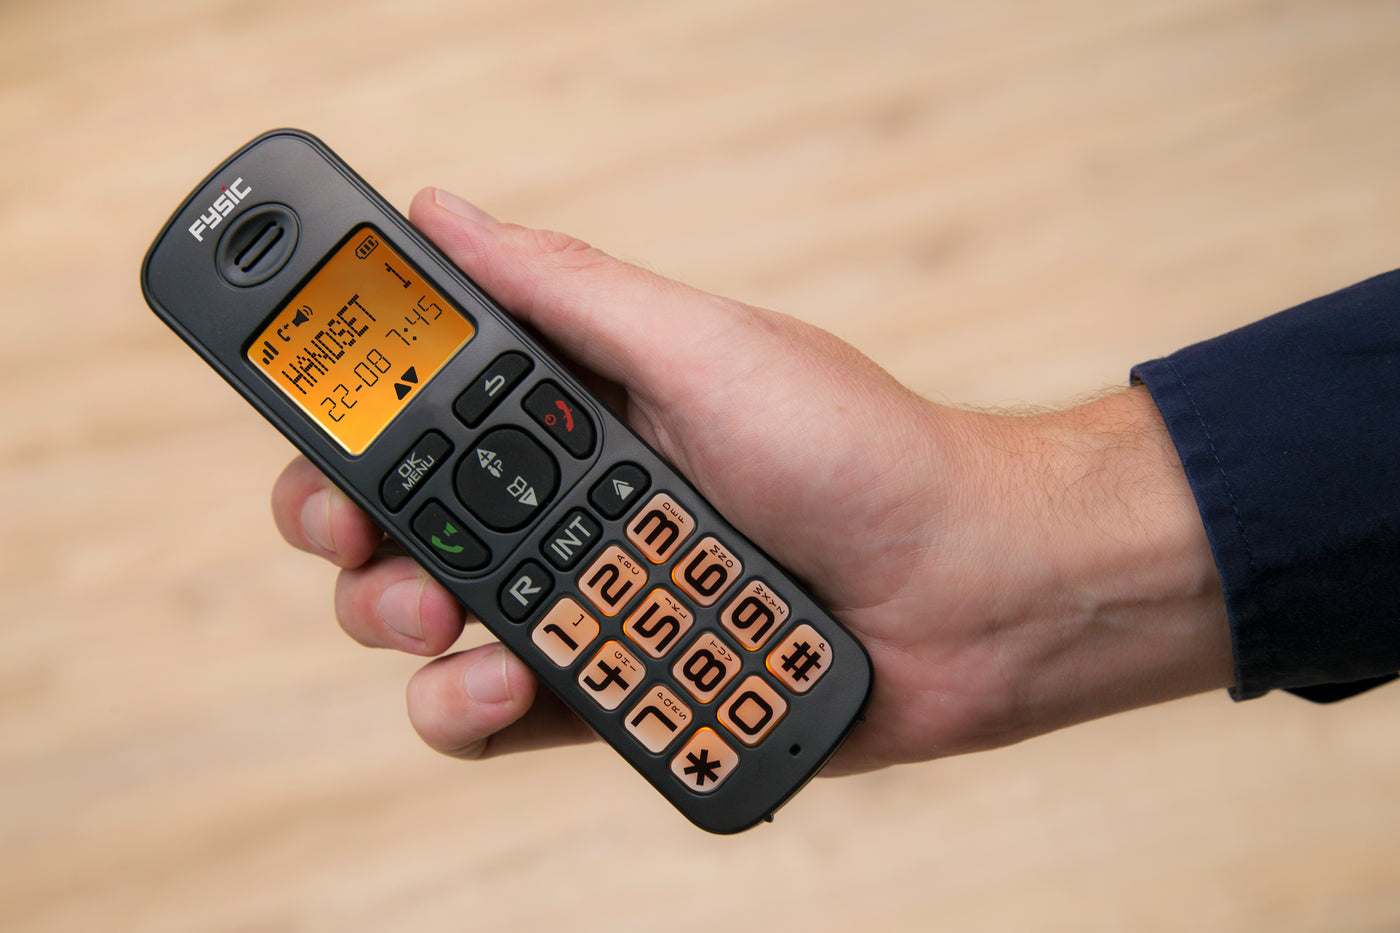 Fysic FX-5520 - DECT-Telefon für Senioren mit großen Tasten und 2 Mobilteilen, Schwarz